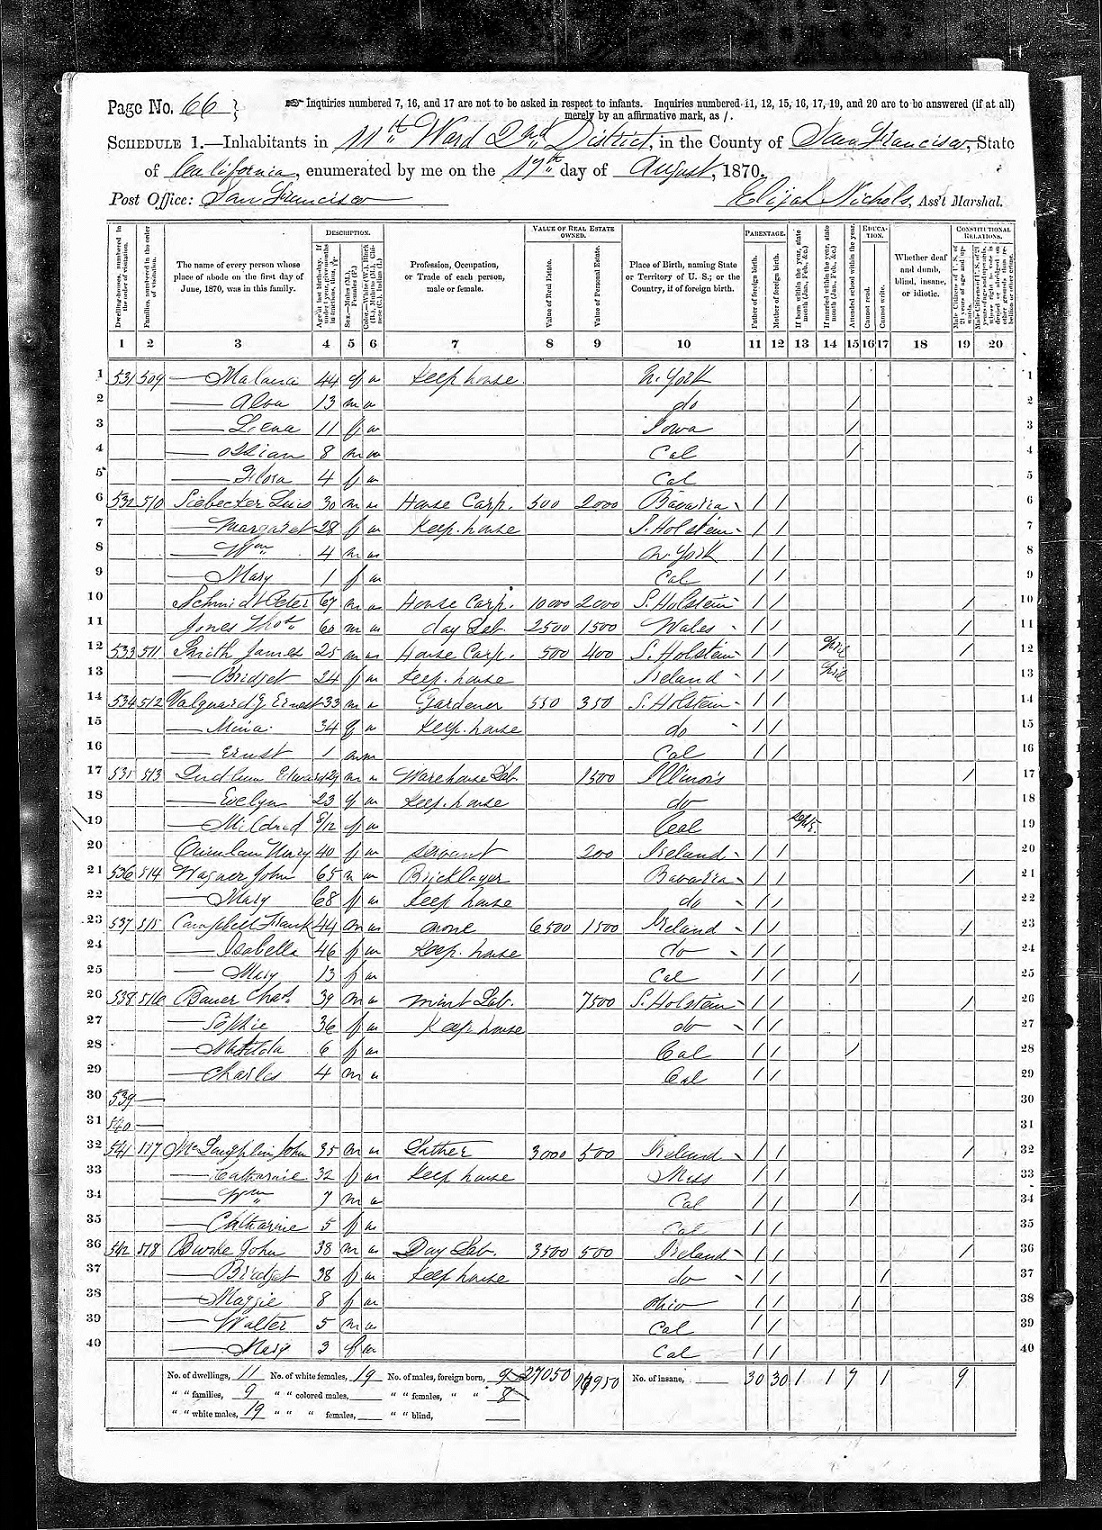 1870 Census image